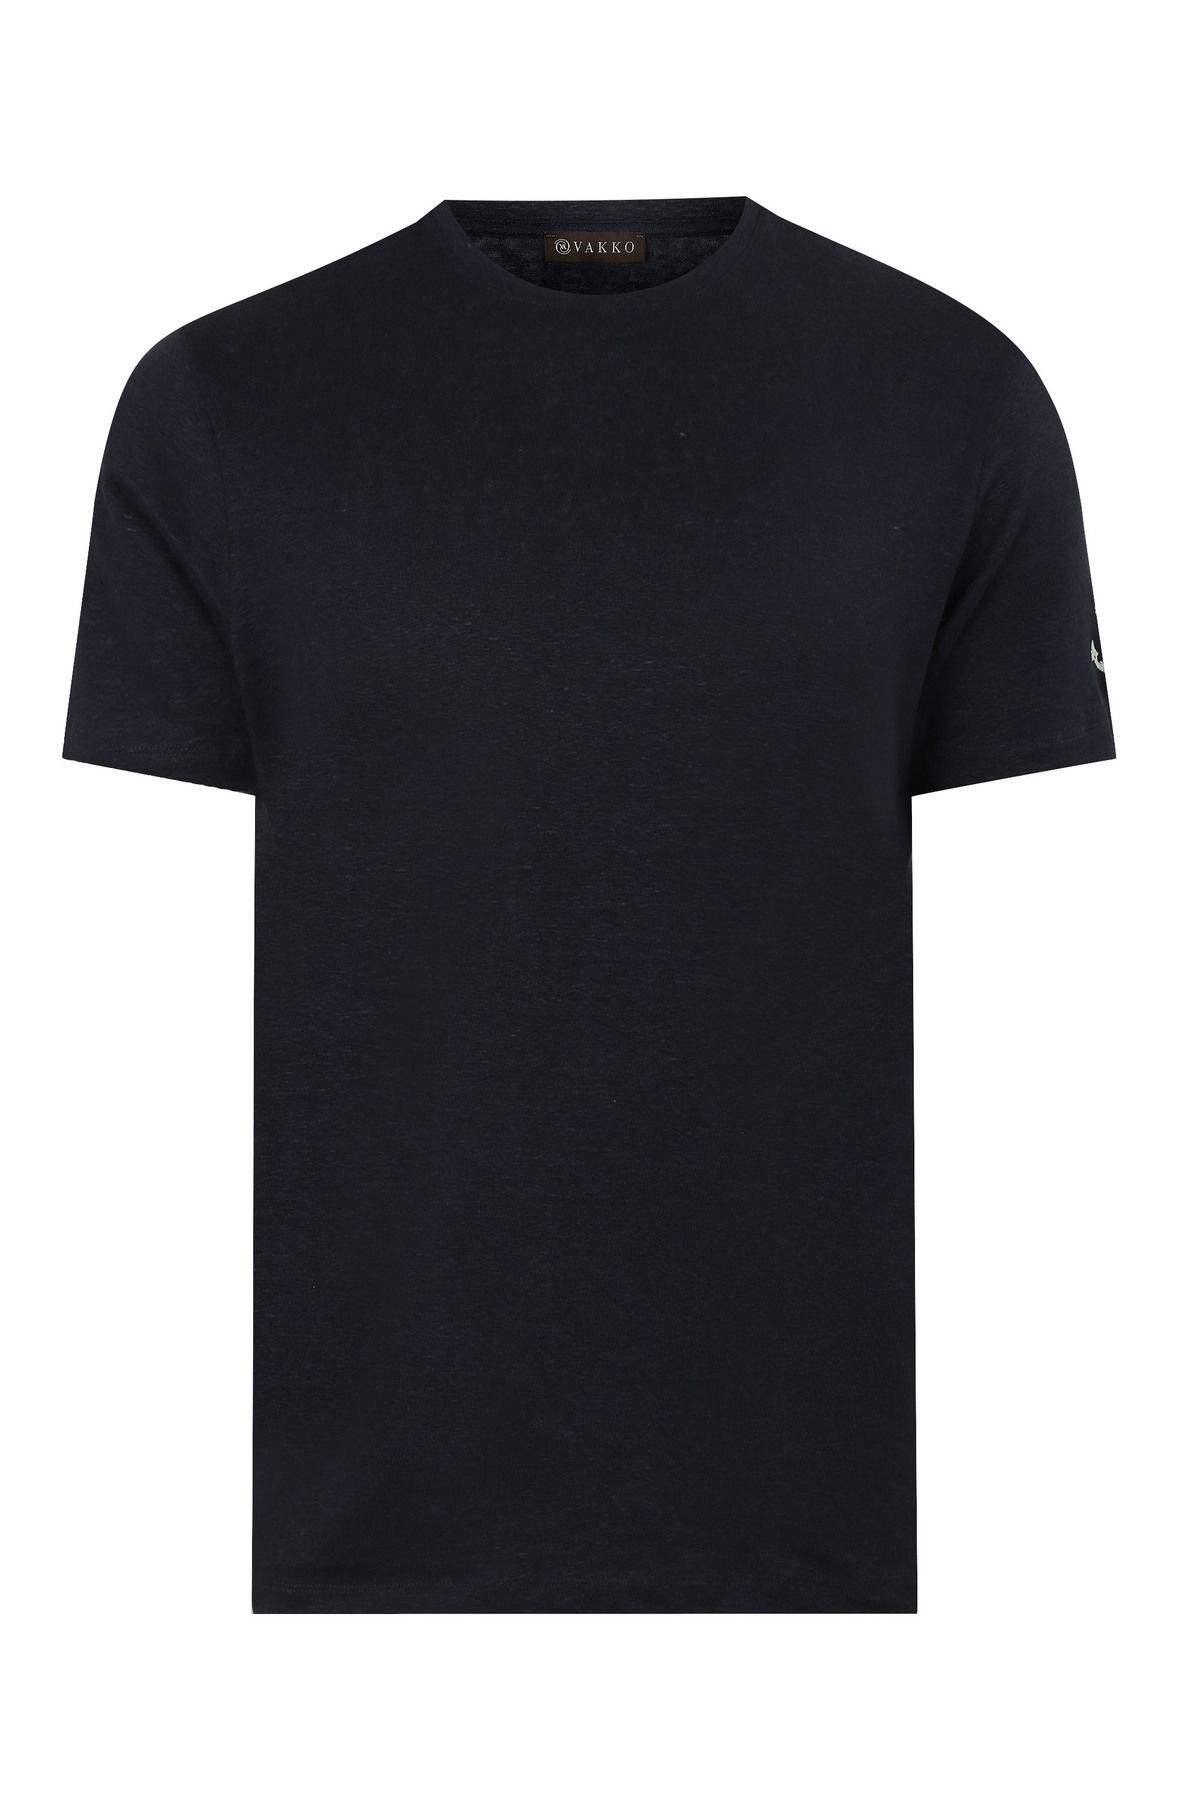 Luca Voranse Unisex Siyah ''lv22'' T-shirt Fiyatı, Yorumları